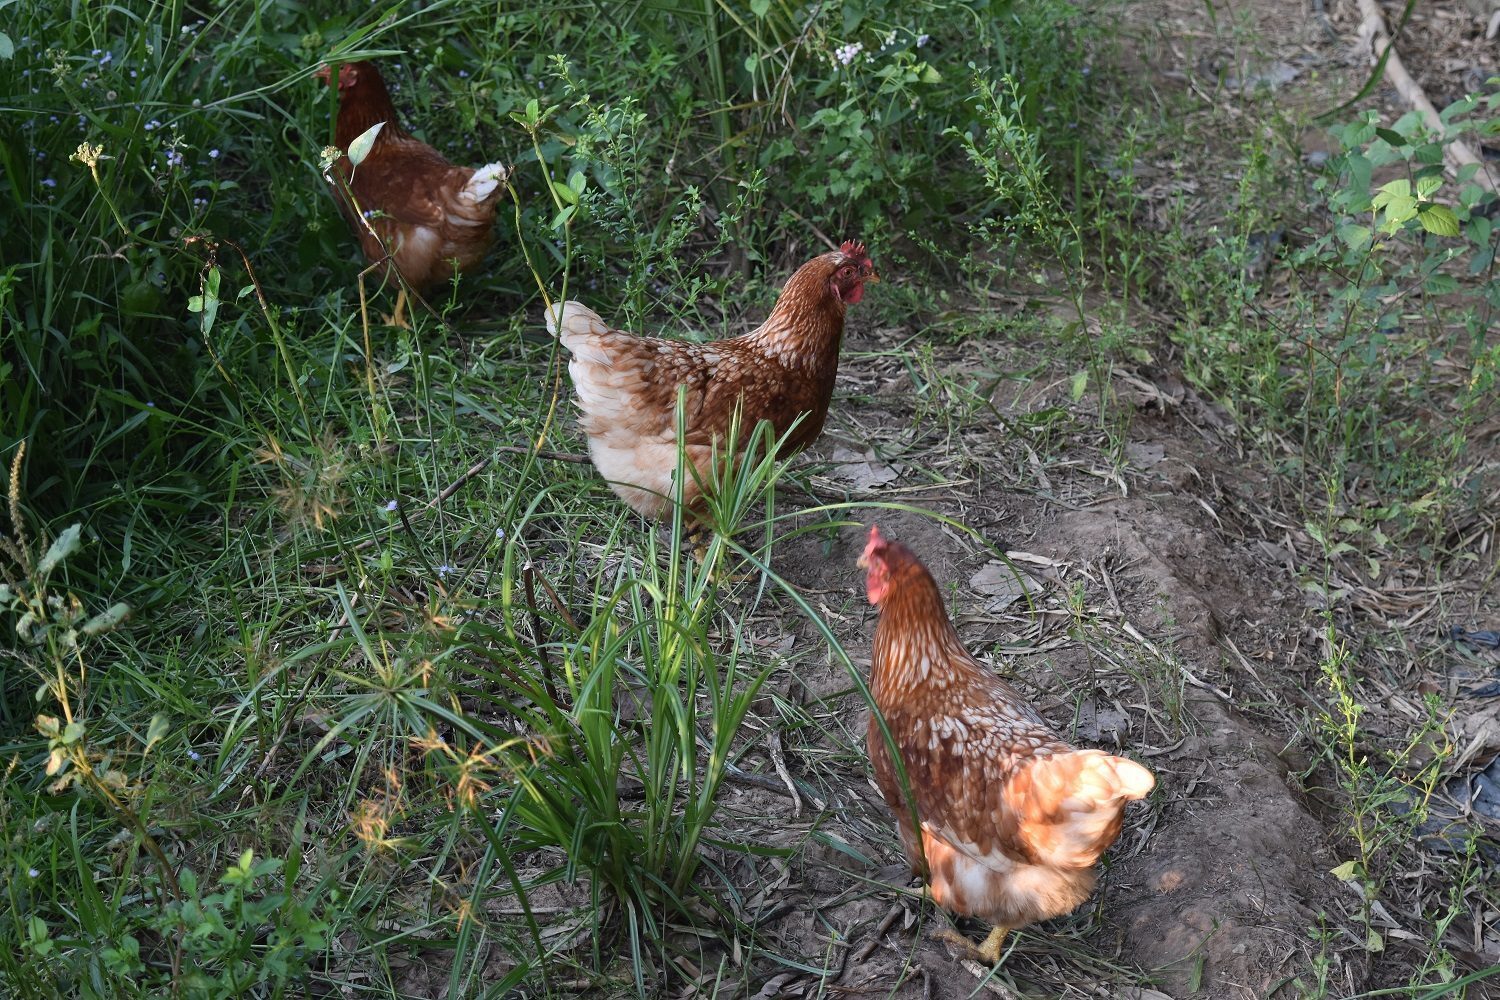 อาหารเสริมไก่ไข่จากธรรมชาติ สูตรลดต้นทุน ไข่ดก ฟองใหญ่ ทำง่าย